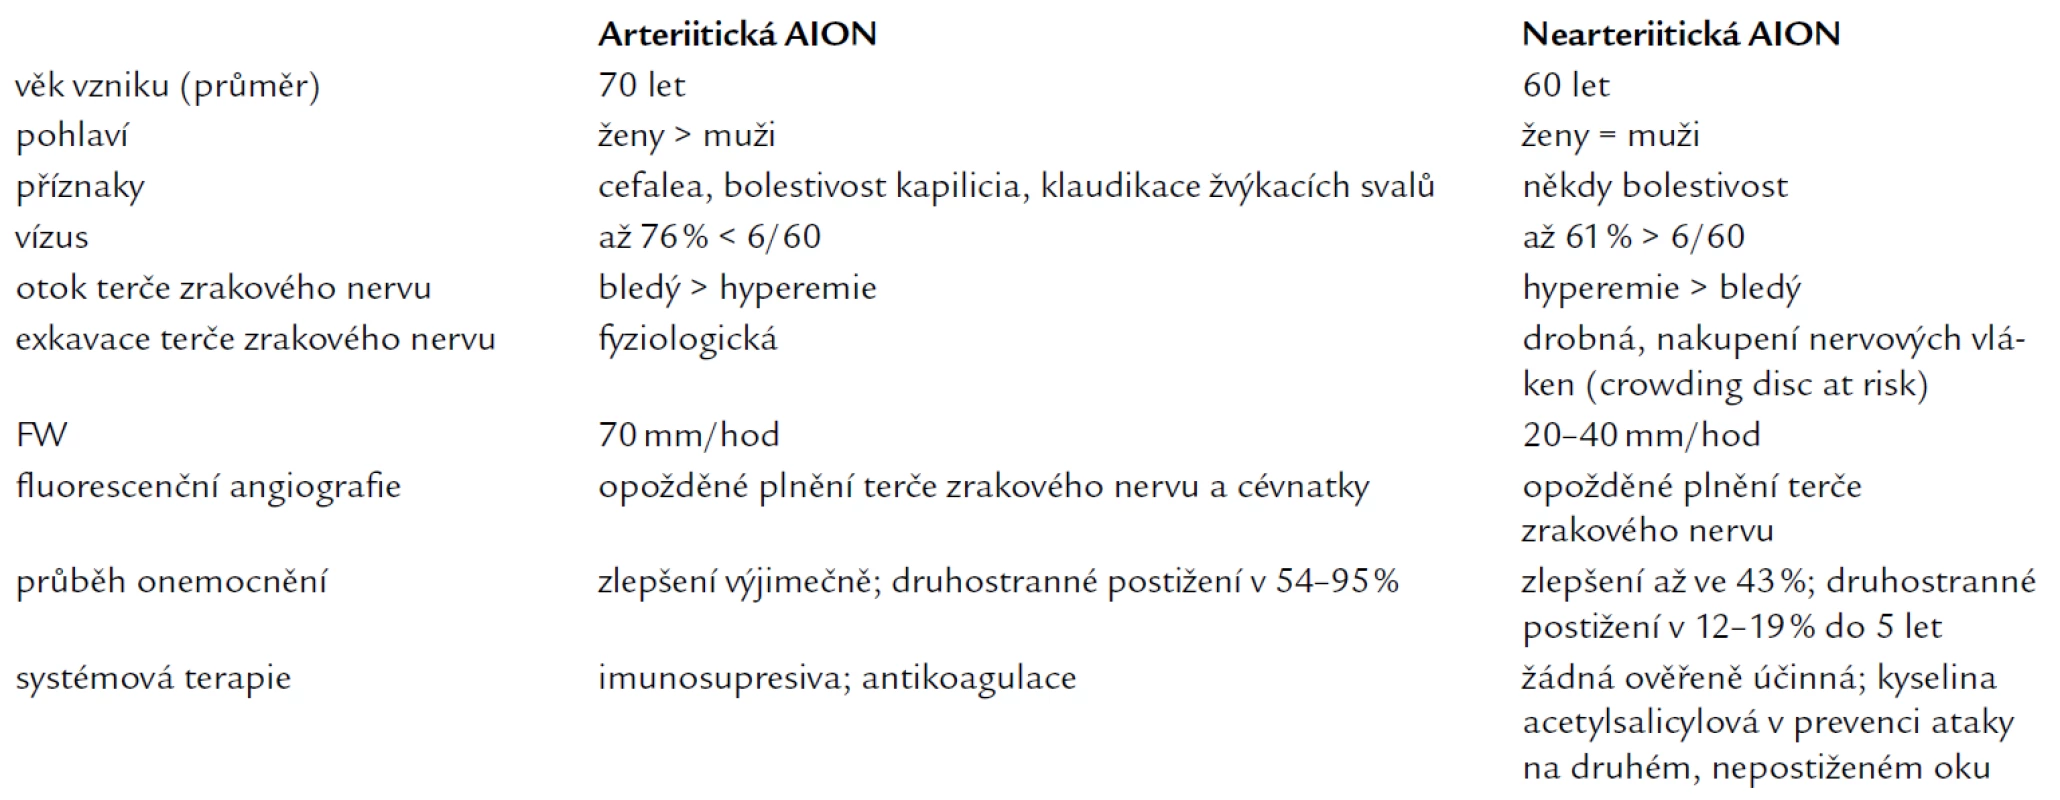 Diferenciální diagnostika arteriitické a nearetriitické formy přední ischemické neuropatie zrakového nervu (AION).